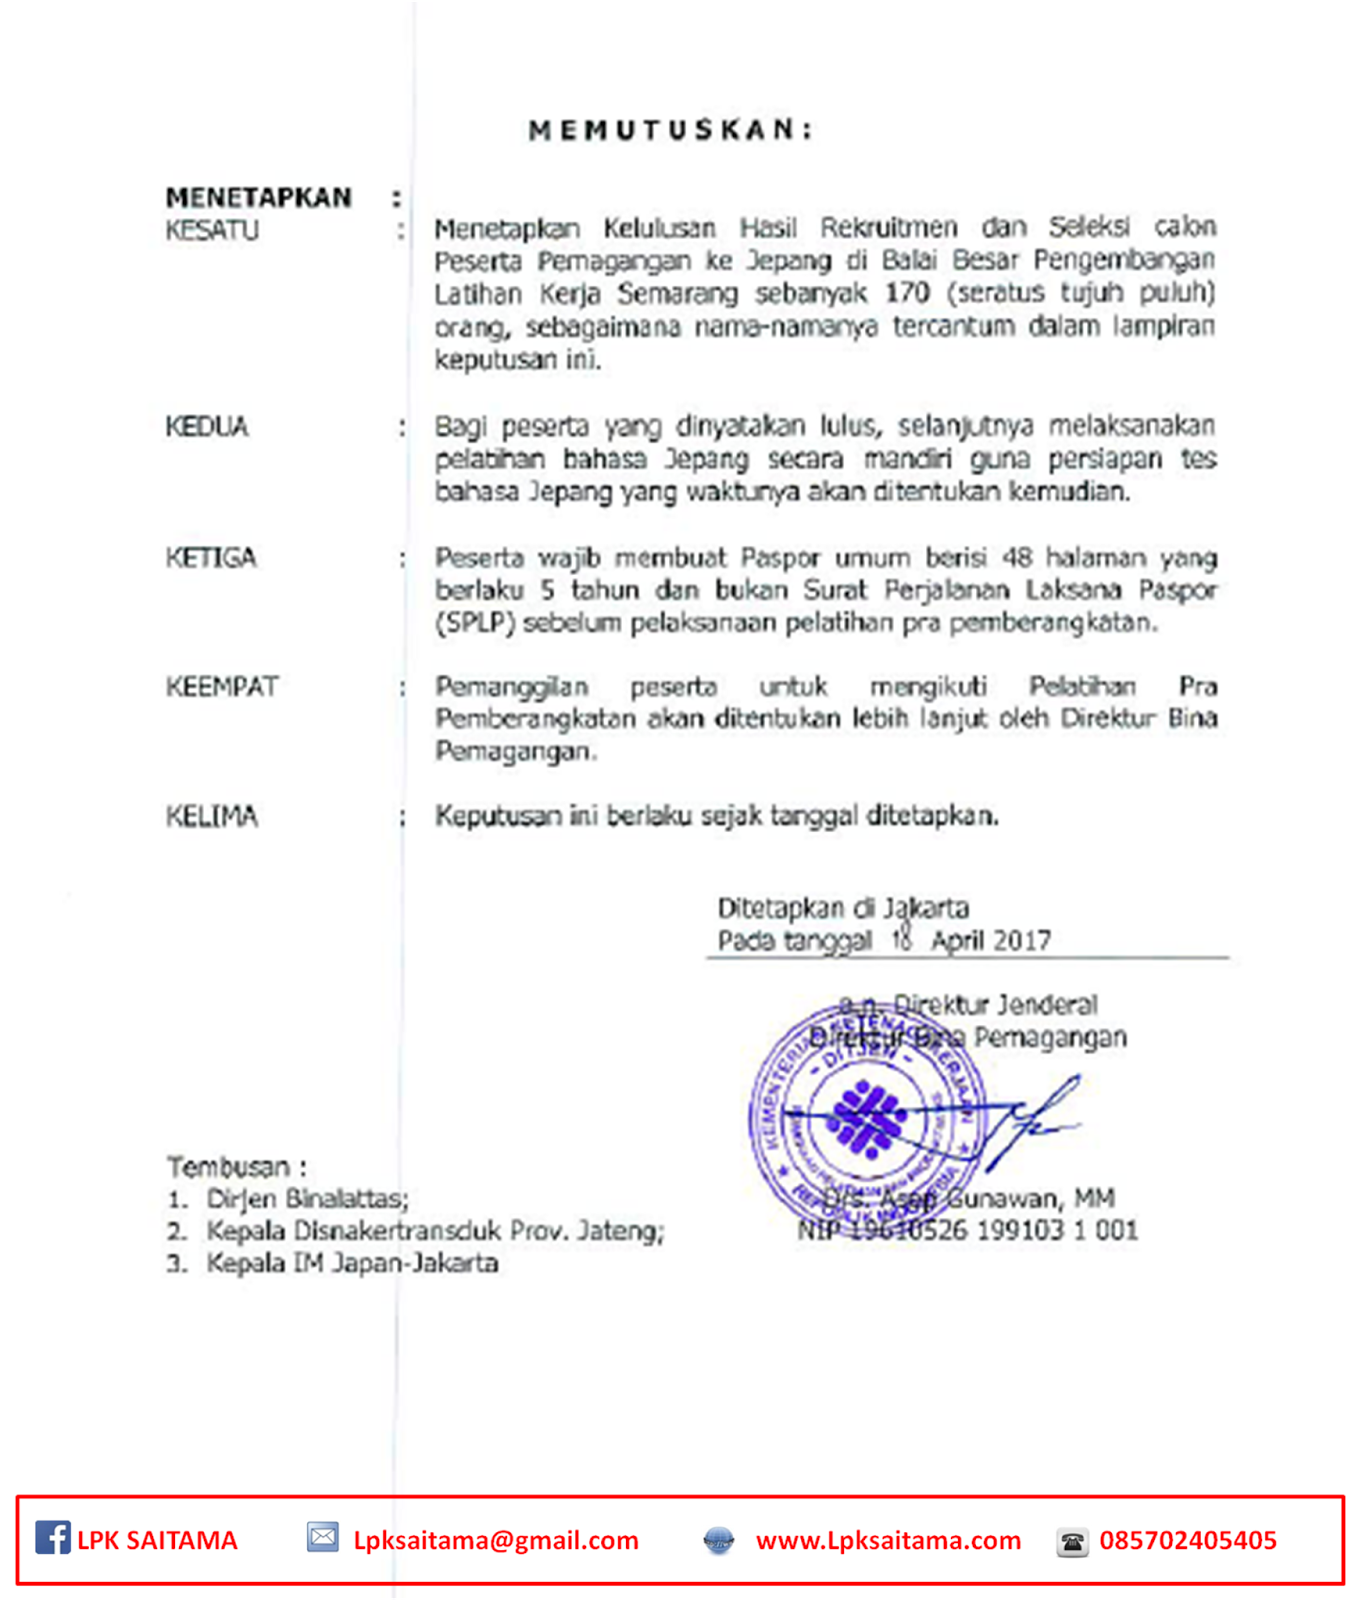 Hasil Meical Check Up dapat di ambil di LPK SAITAMA Jl Pahlawan No 9 Prajenan Mertoyudan Magelang